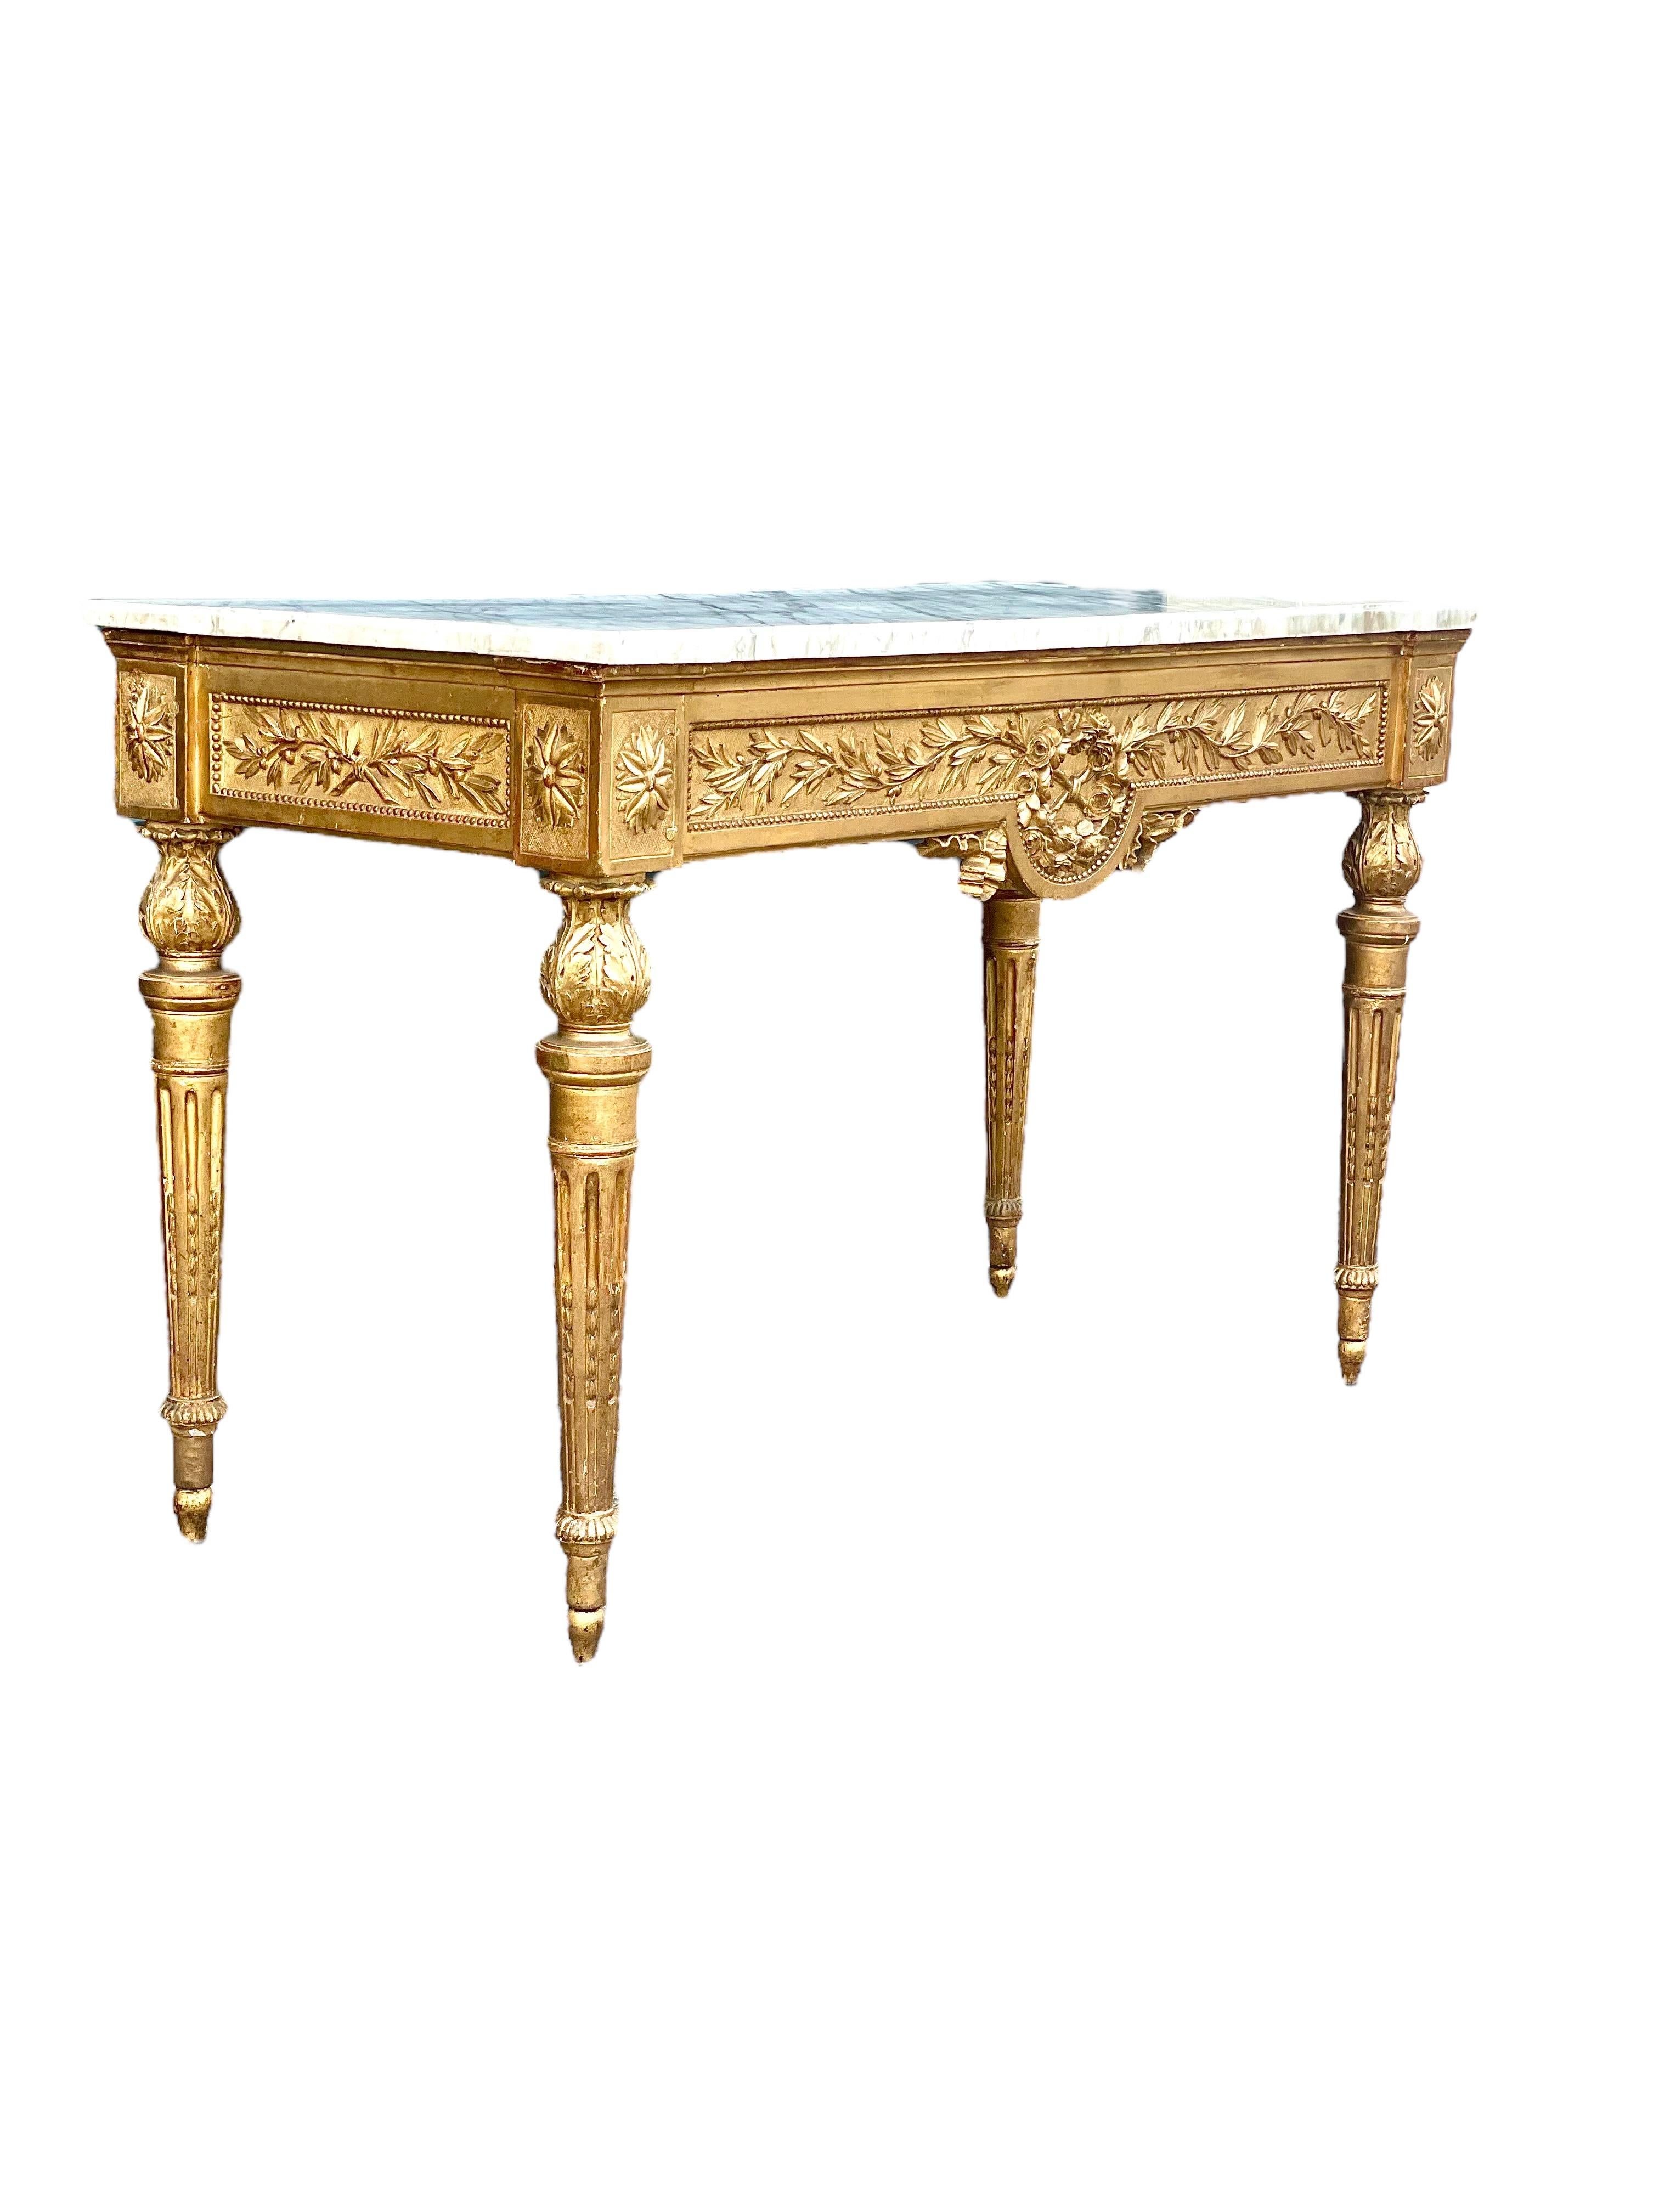 Ein opulenter französischer Konsolentisch aus geschnitztem Goldholz aus der Zeit Ludwigs XVI. mit einer originalen Marmorplatte aus dem 18. Der rechteckige, elegante neoklassizistische Tisch ist aufwändig geschnitzt und verziert. Sein Gürtel ist an